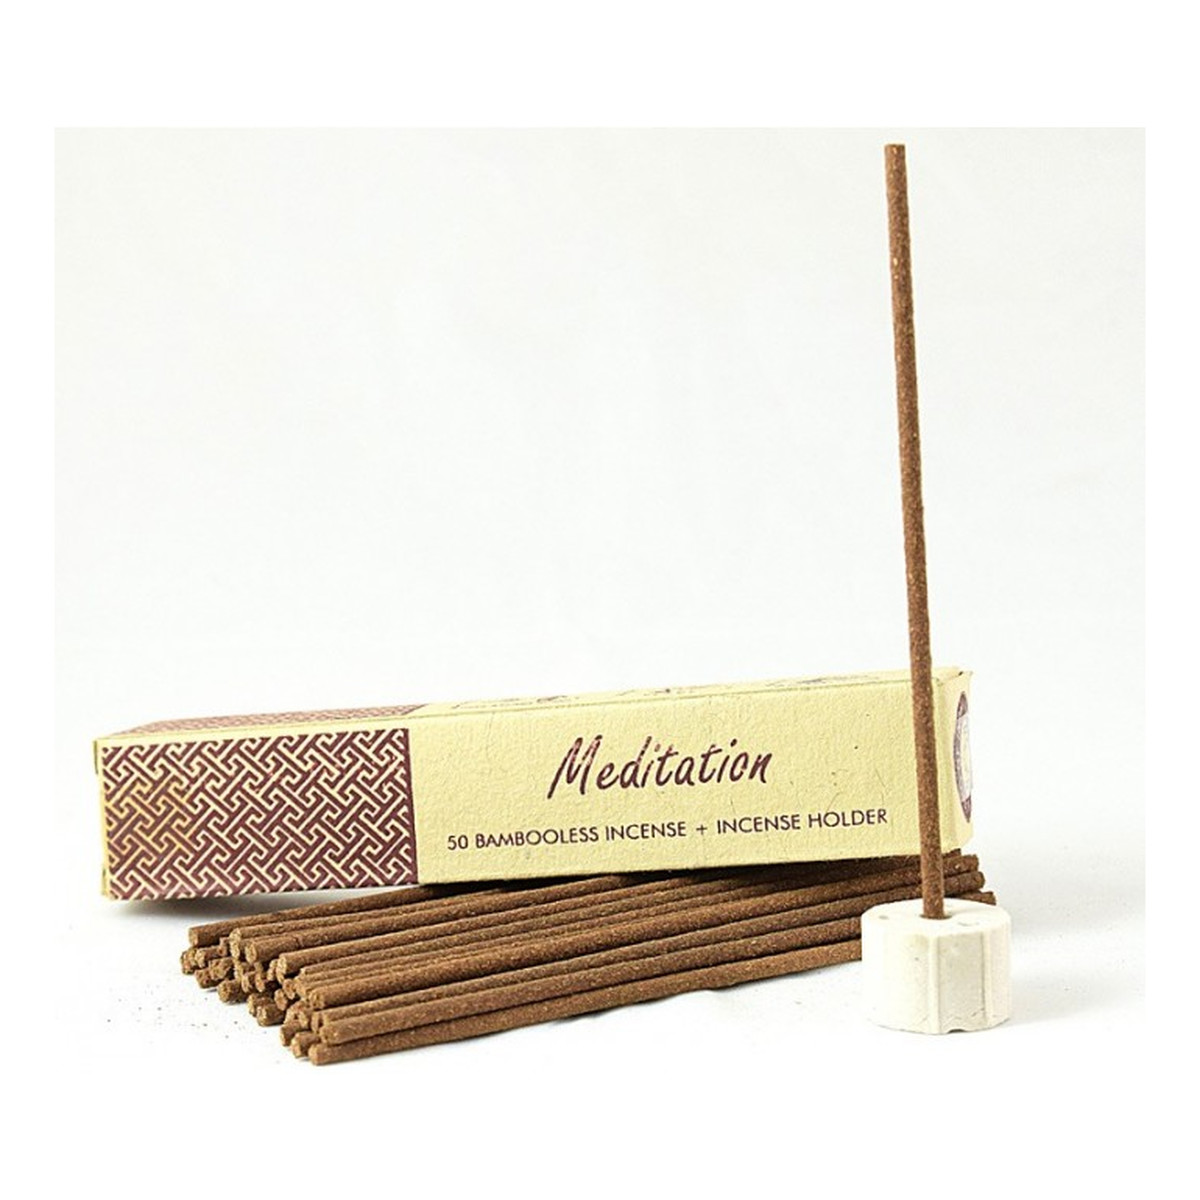 Song of India Meditation Nie zawierające bambusa kadzidła indyjskie z ceramicznym stojakiem 50 szt.